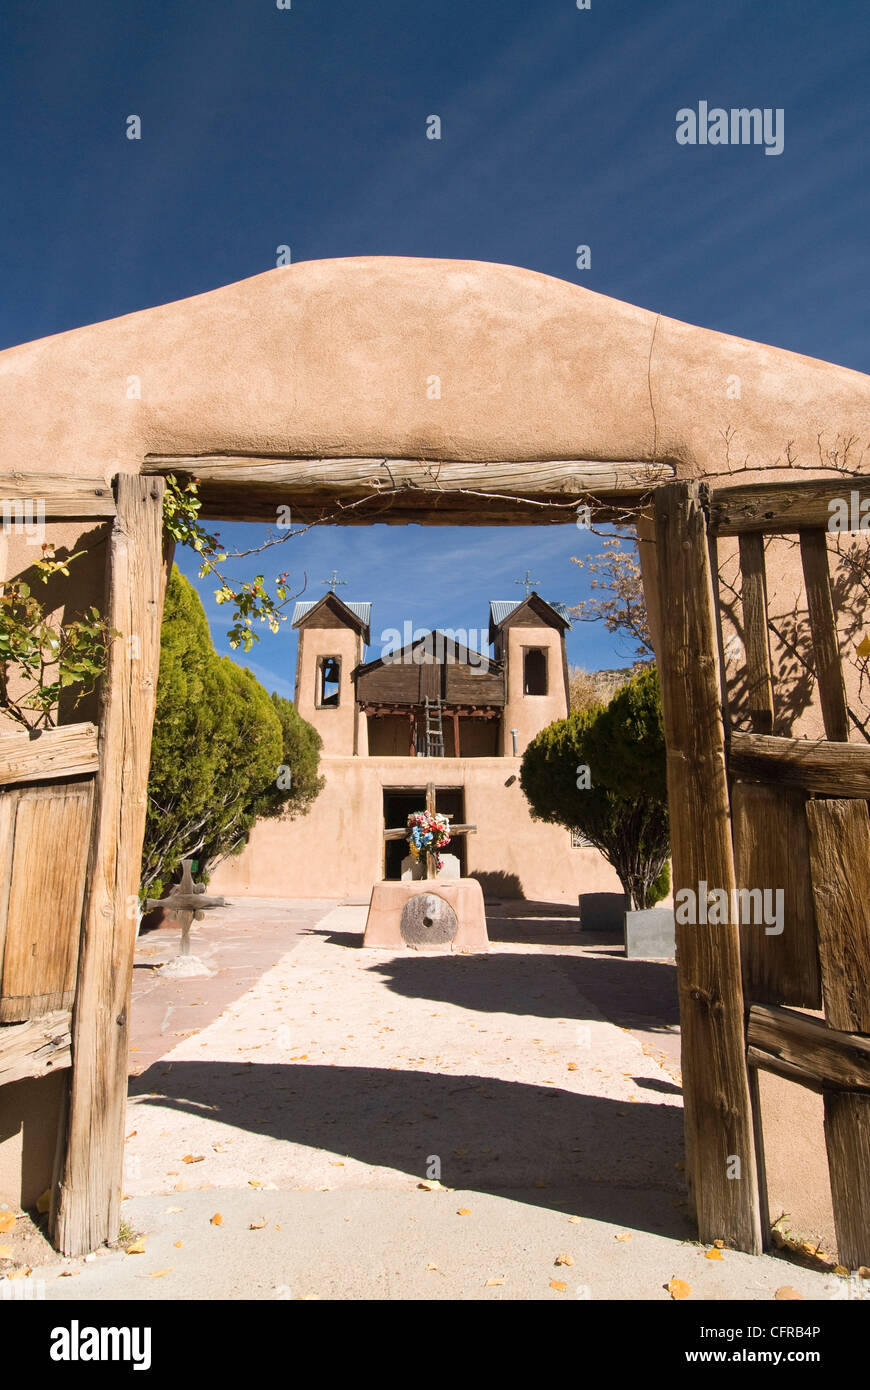 El Santuario De Chimayo, costruito nel 1816, Chimayo, Nuovo Messico, Stati Uniti d'America, America del Nord Foto Stock